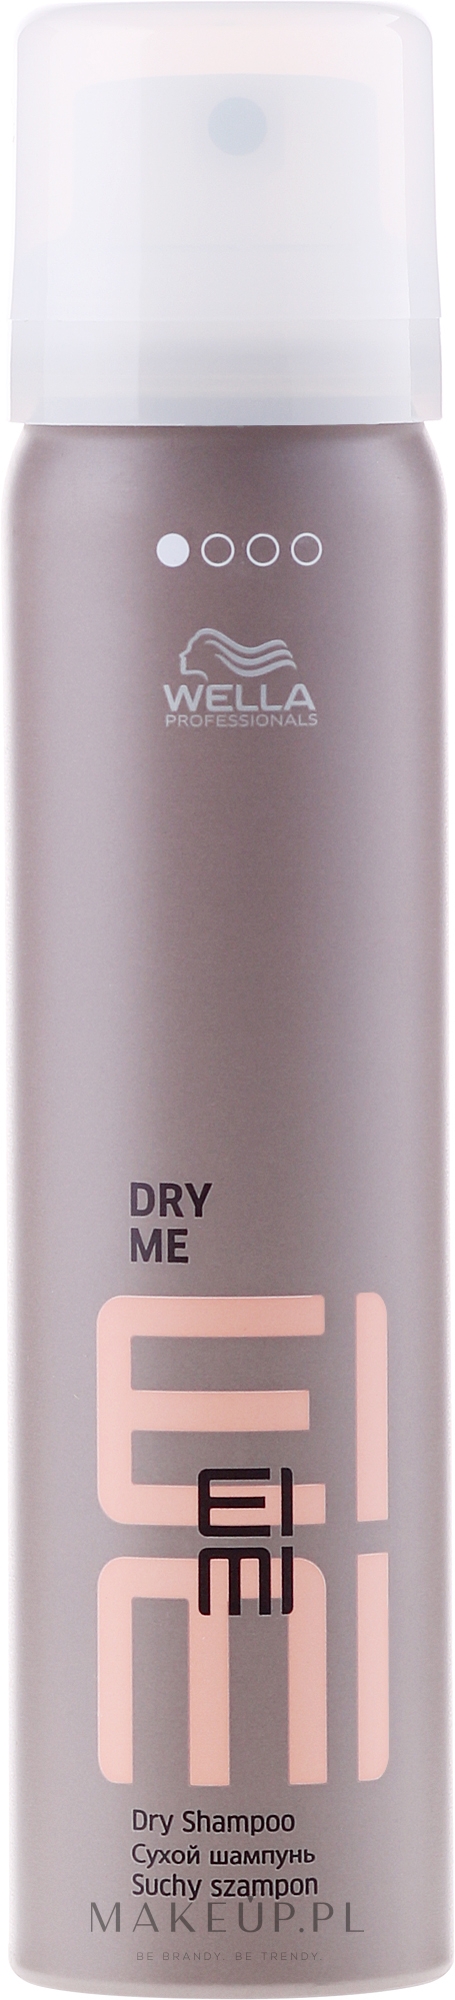 Odświeżający suchy szampon do włosów - Wella Professionals EIMI Dry Me — Zdjęcie 65 ml